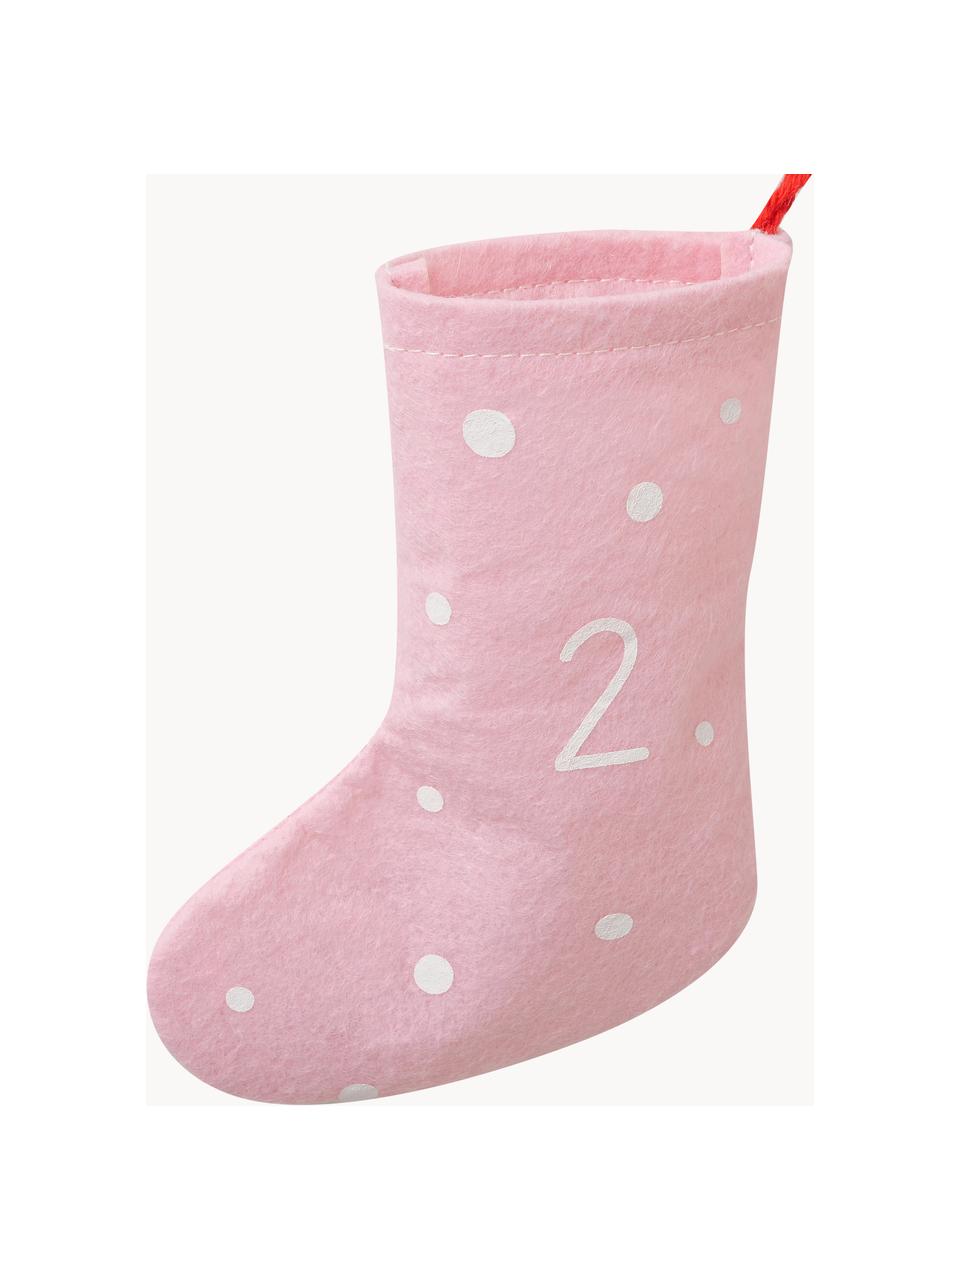 Adventskalender Socks L 200 cm, Vilt, Rood, roze, wit, L 200 cm